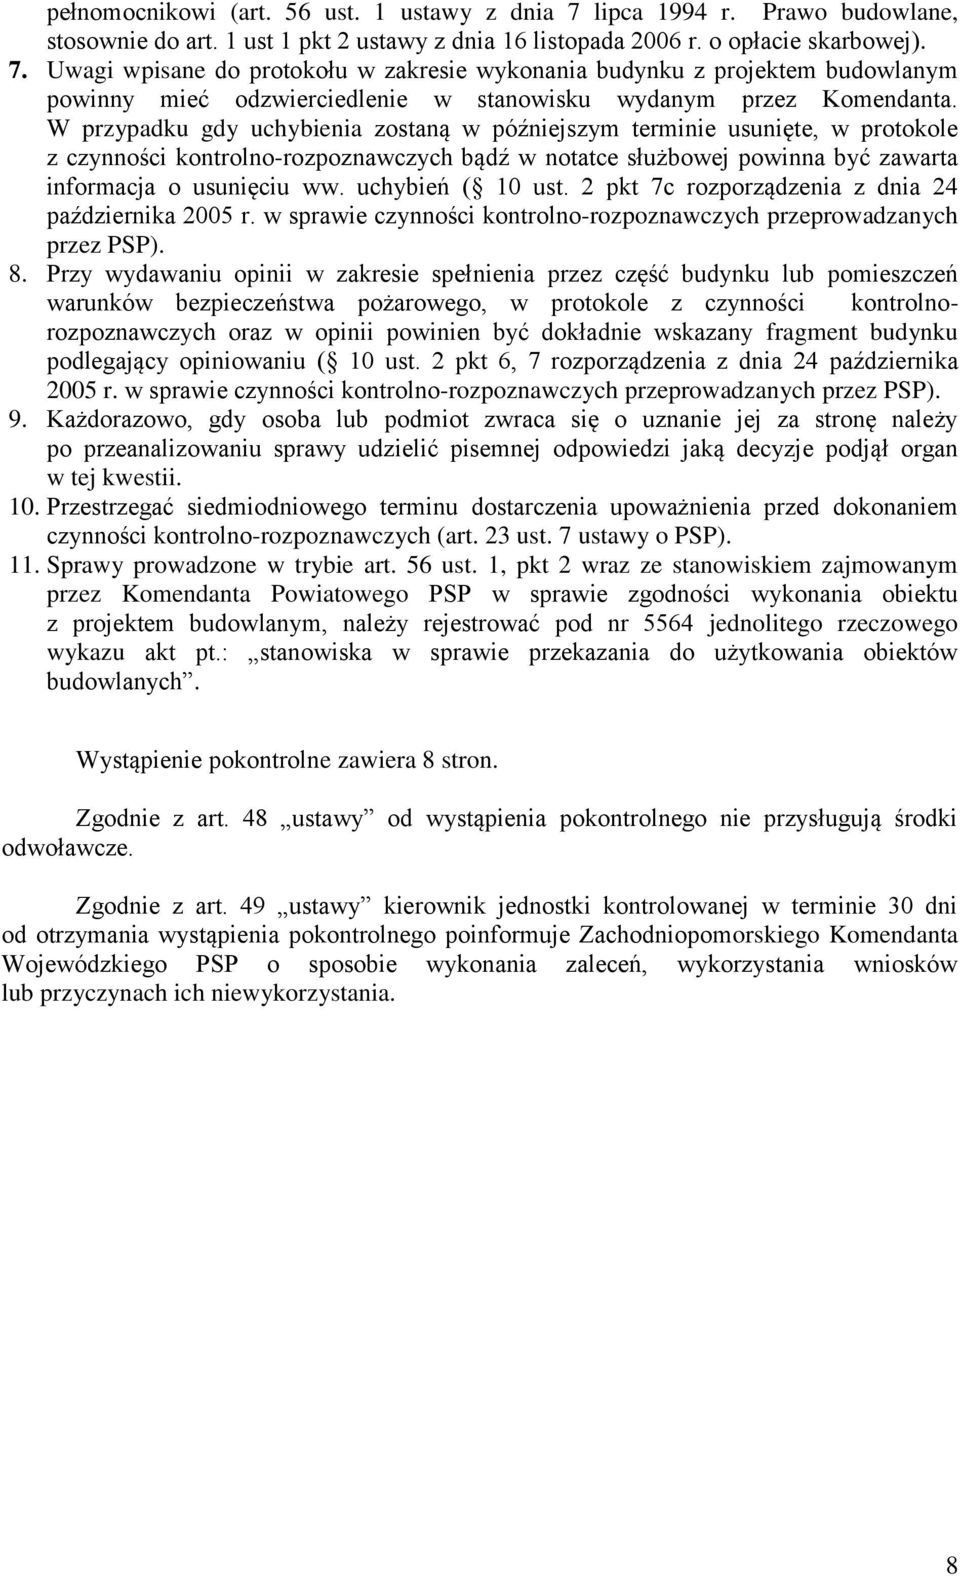 uchybień ( 10 ust. 2 pkt 7c rozporządzenia z dnia 24 października 2005 r. w sprawie czynności kontrolno-rozpoznawczych przeprowadzanych przez PSP). 8.